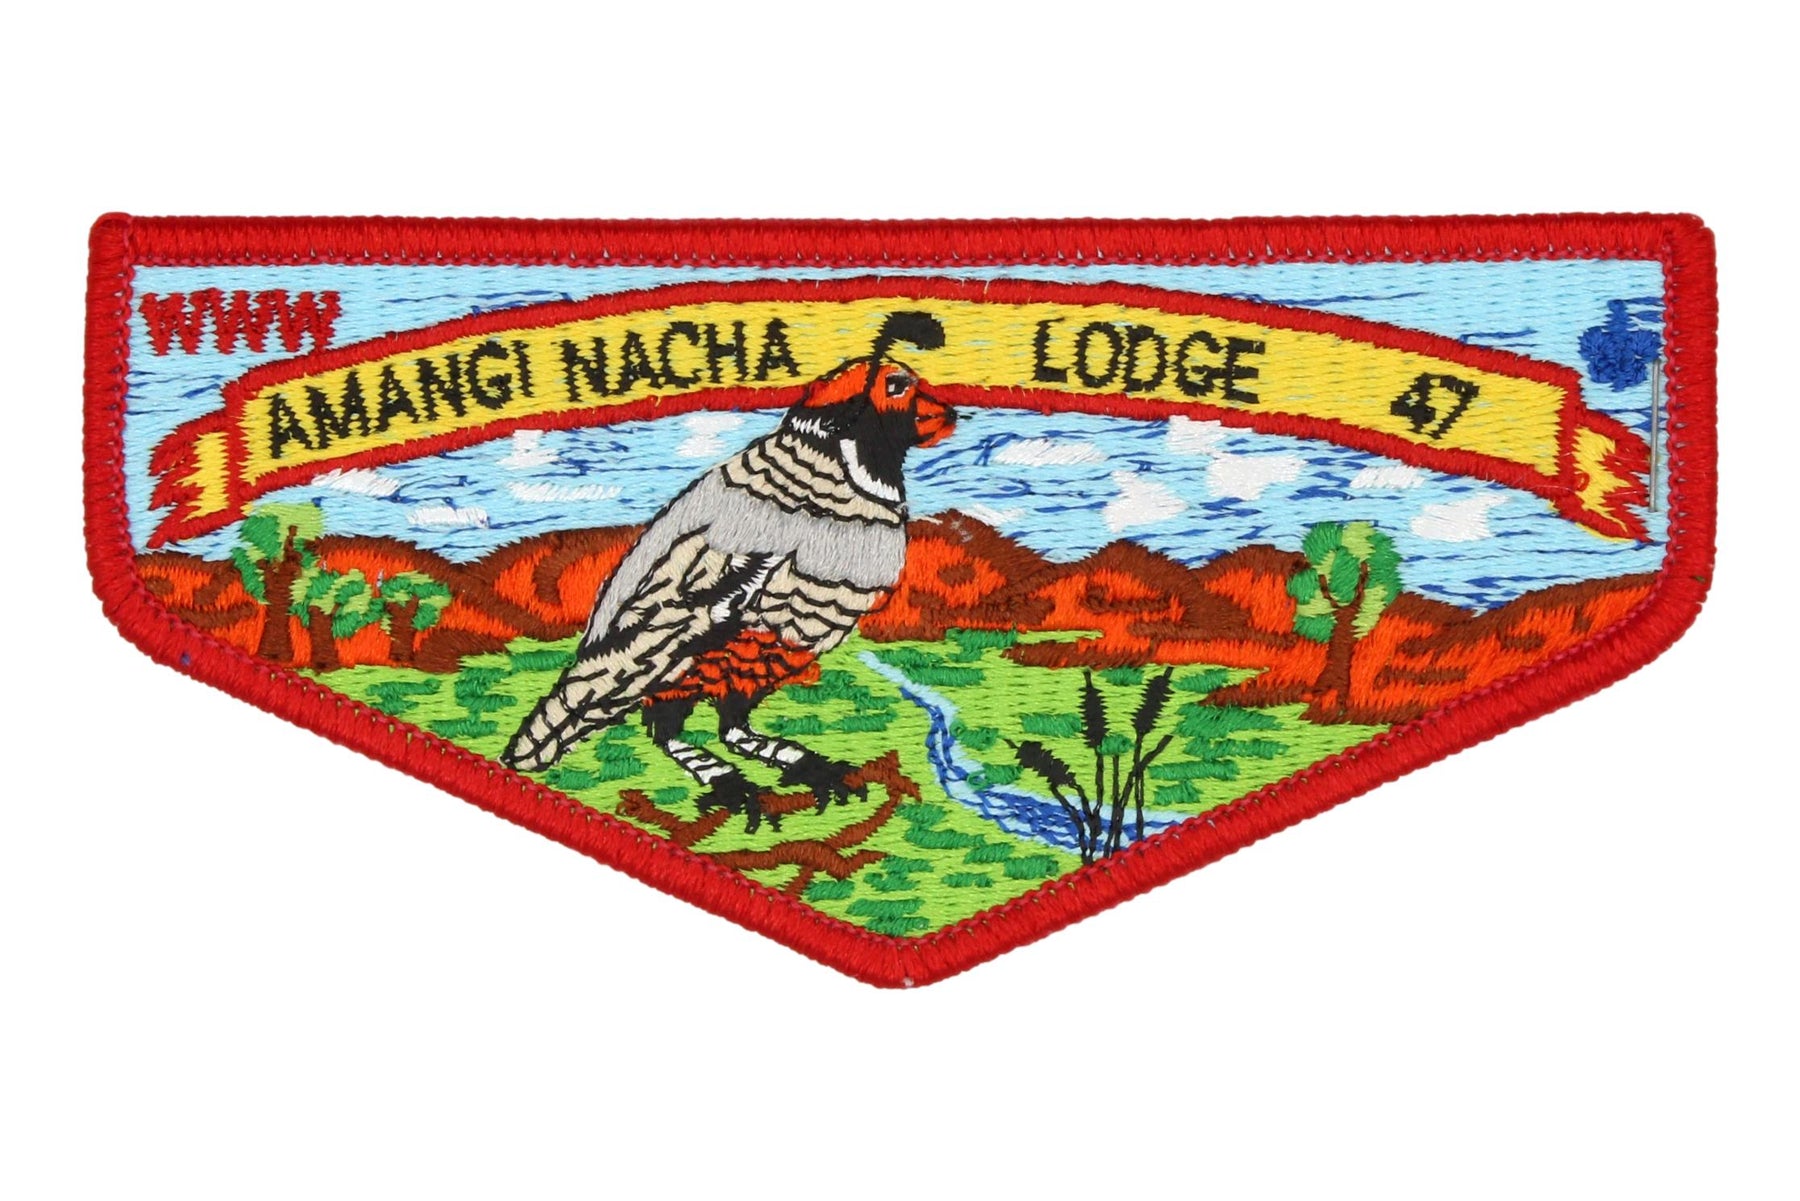 Lodge 47 Amangi Nacha Flap